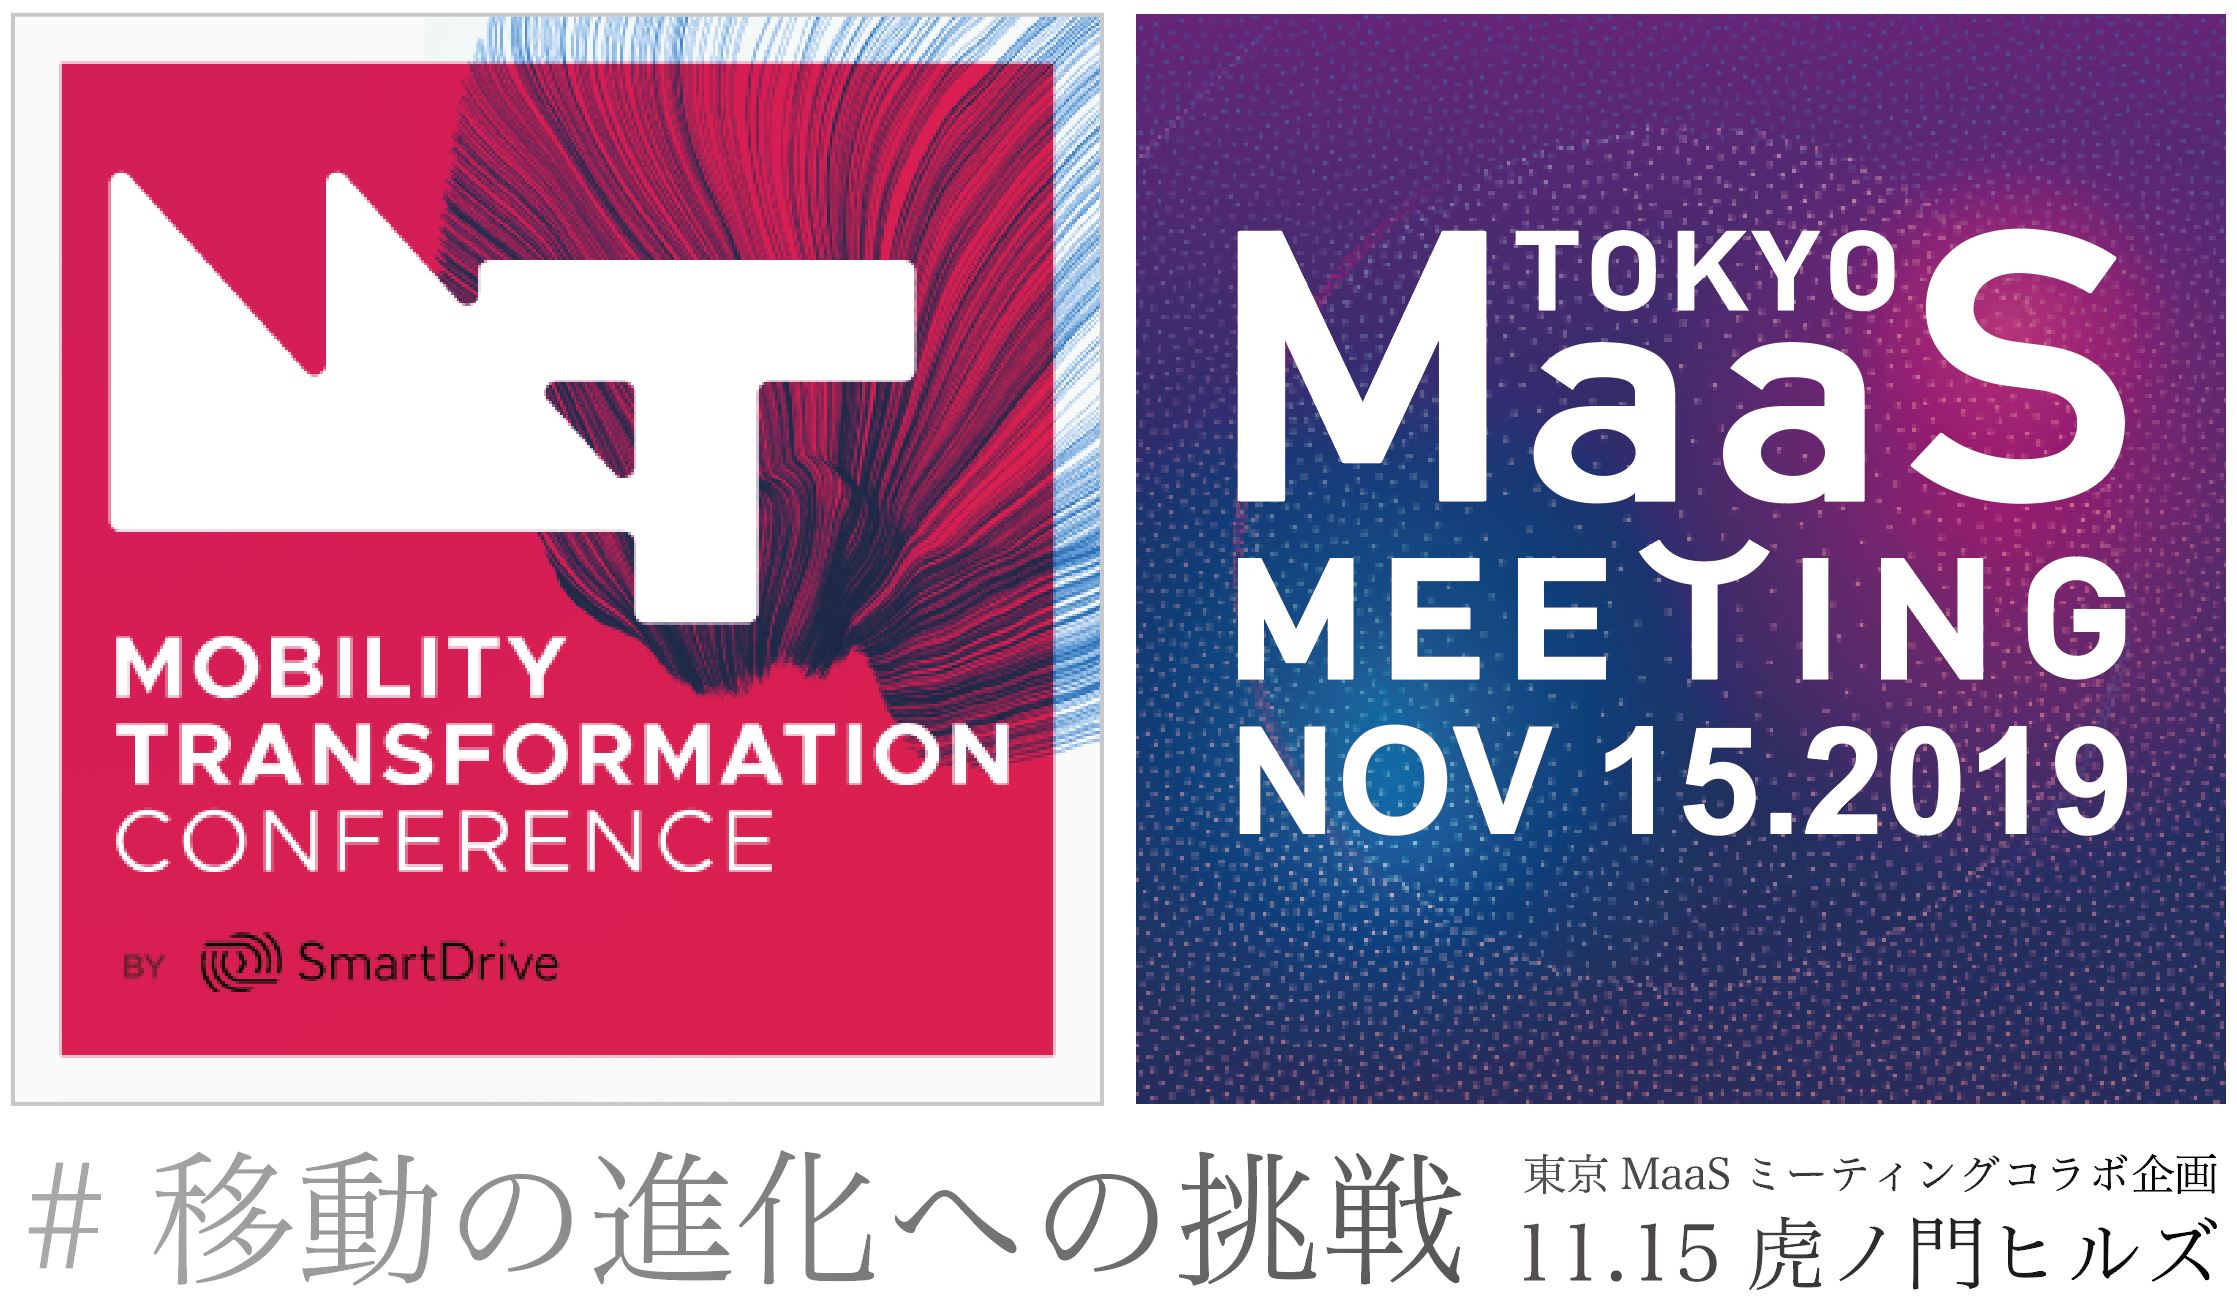 モビリティトランスフォーメーション 東京マースミーティング 東京MaaSミーティング 対談 セミナー カスタムカー